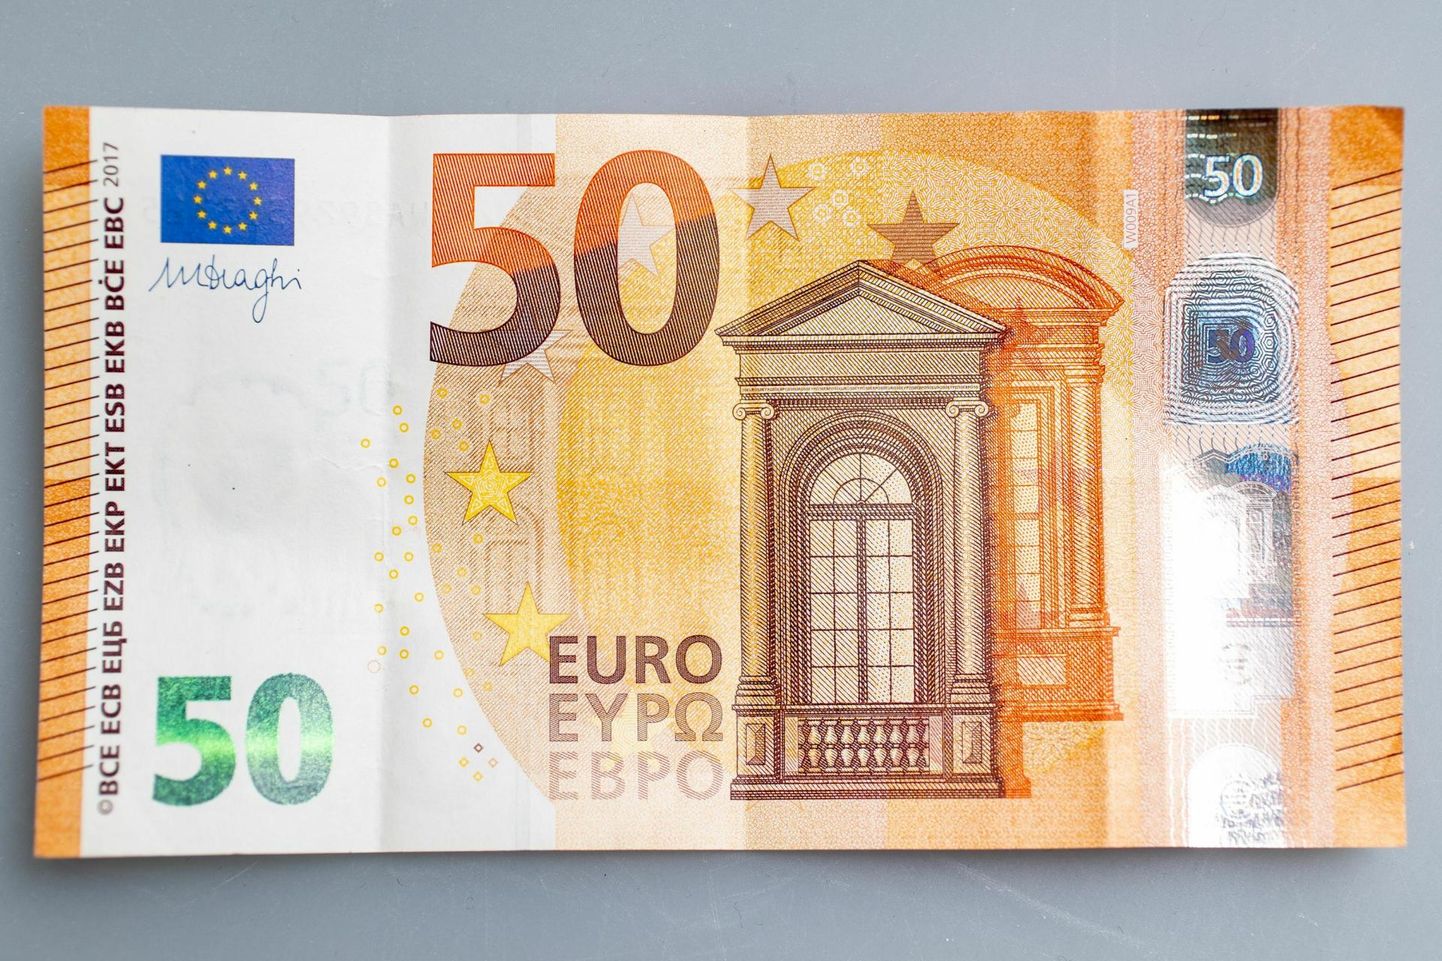 Ühekordse hinnaleevendamise toetuse suurus on 50 eurot. 